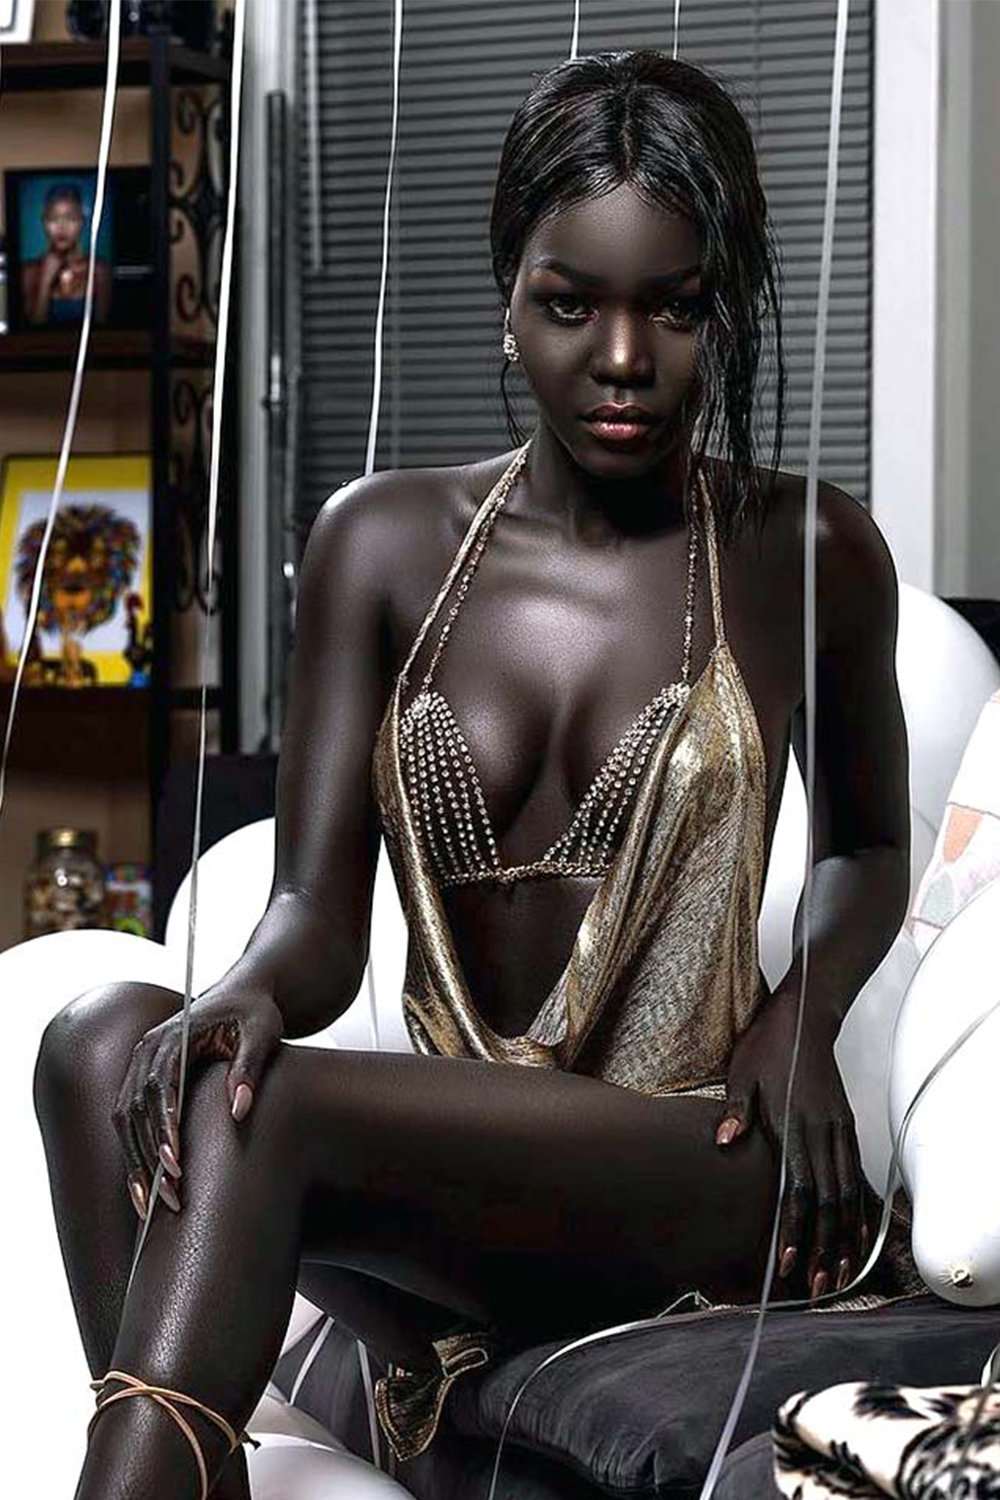 Негритянки питера. Няким Гатвеч. Нуаким Гатвеч модель из Южного Судана. Королева тьмы модель из Южного Судана Ньяким. Nyakim Gatwech (Ньяким Гатвеч) - 24-летняя модель.